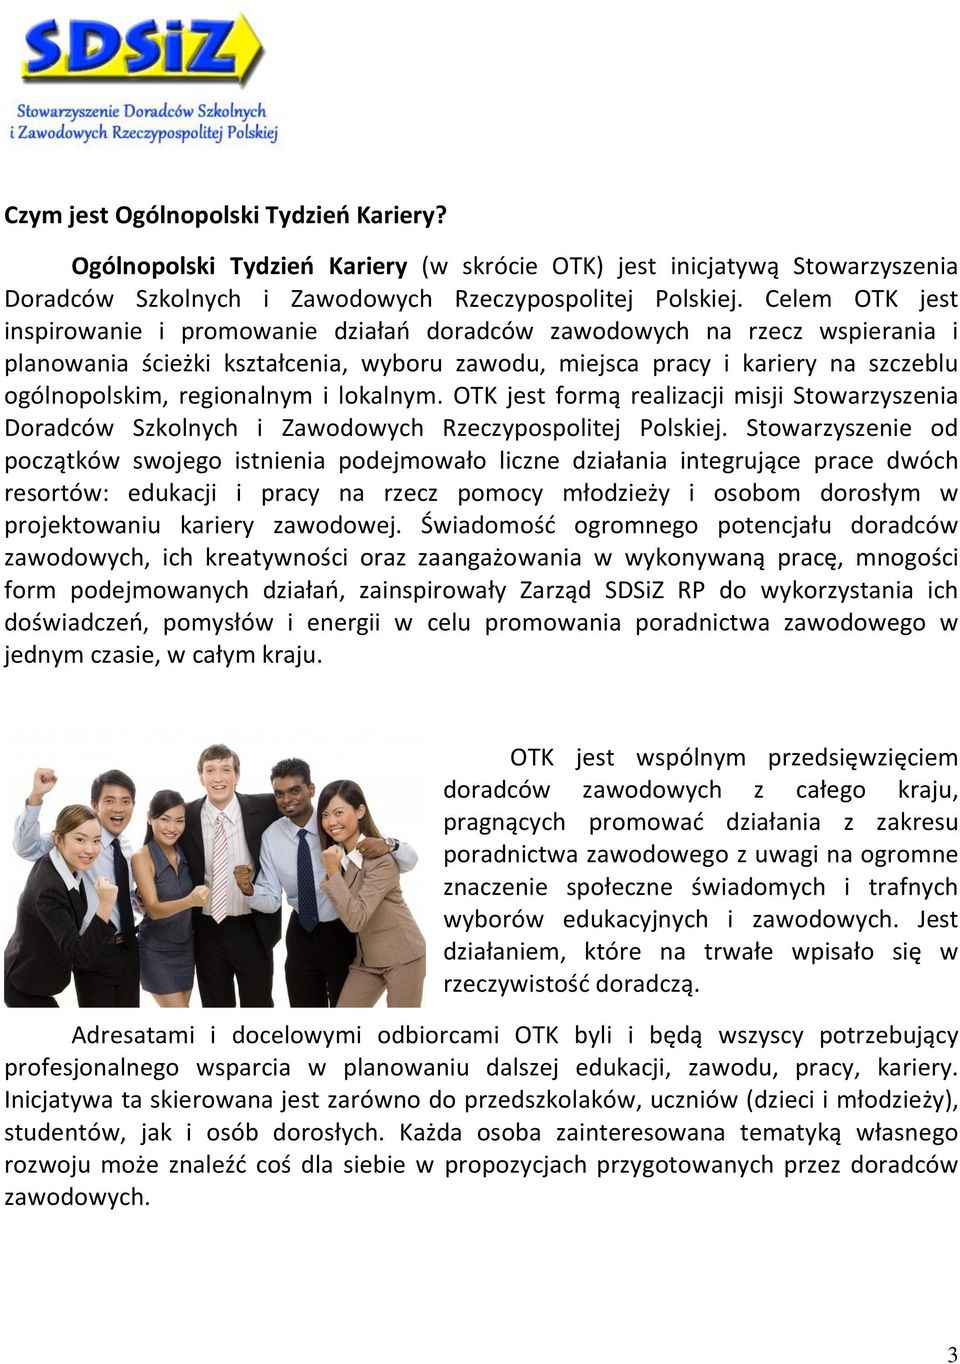 regionalnym i lokalnym. OTK jest formą realizacji misji Stowarzyszenia Doradców Szkolnych i Zawodowych Rzeczypospolitej Polskiej.